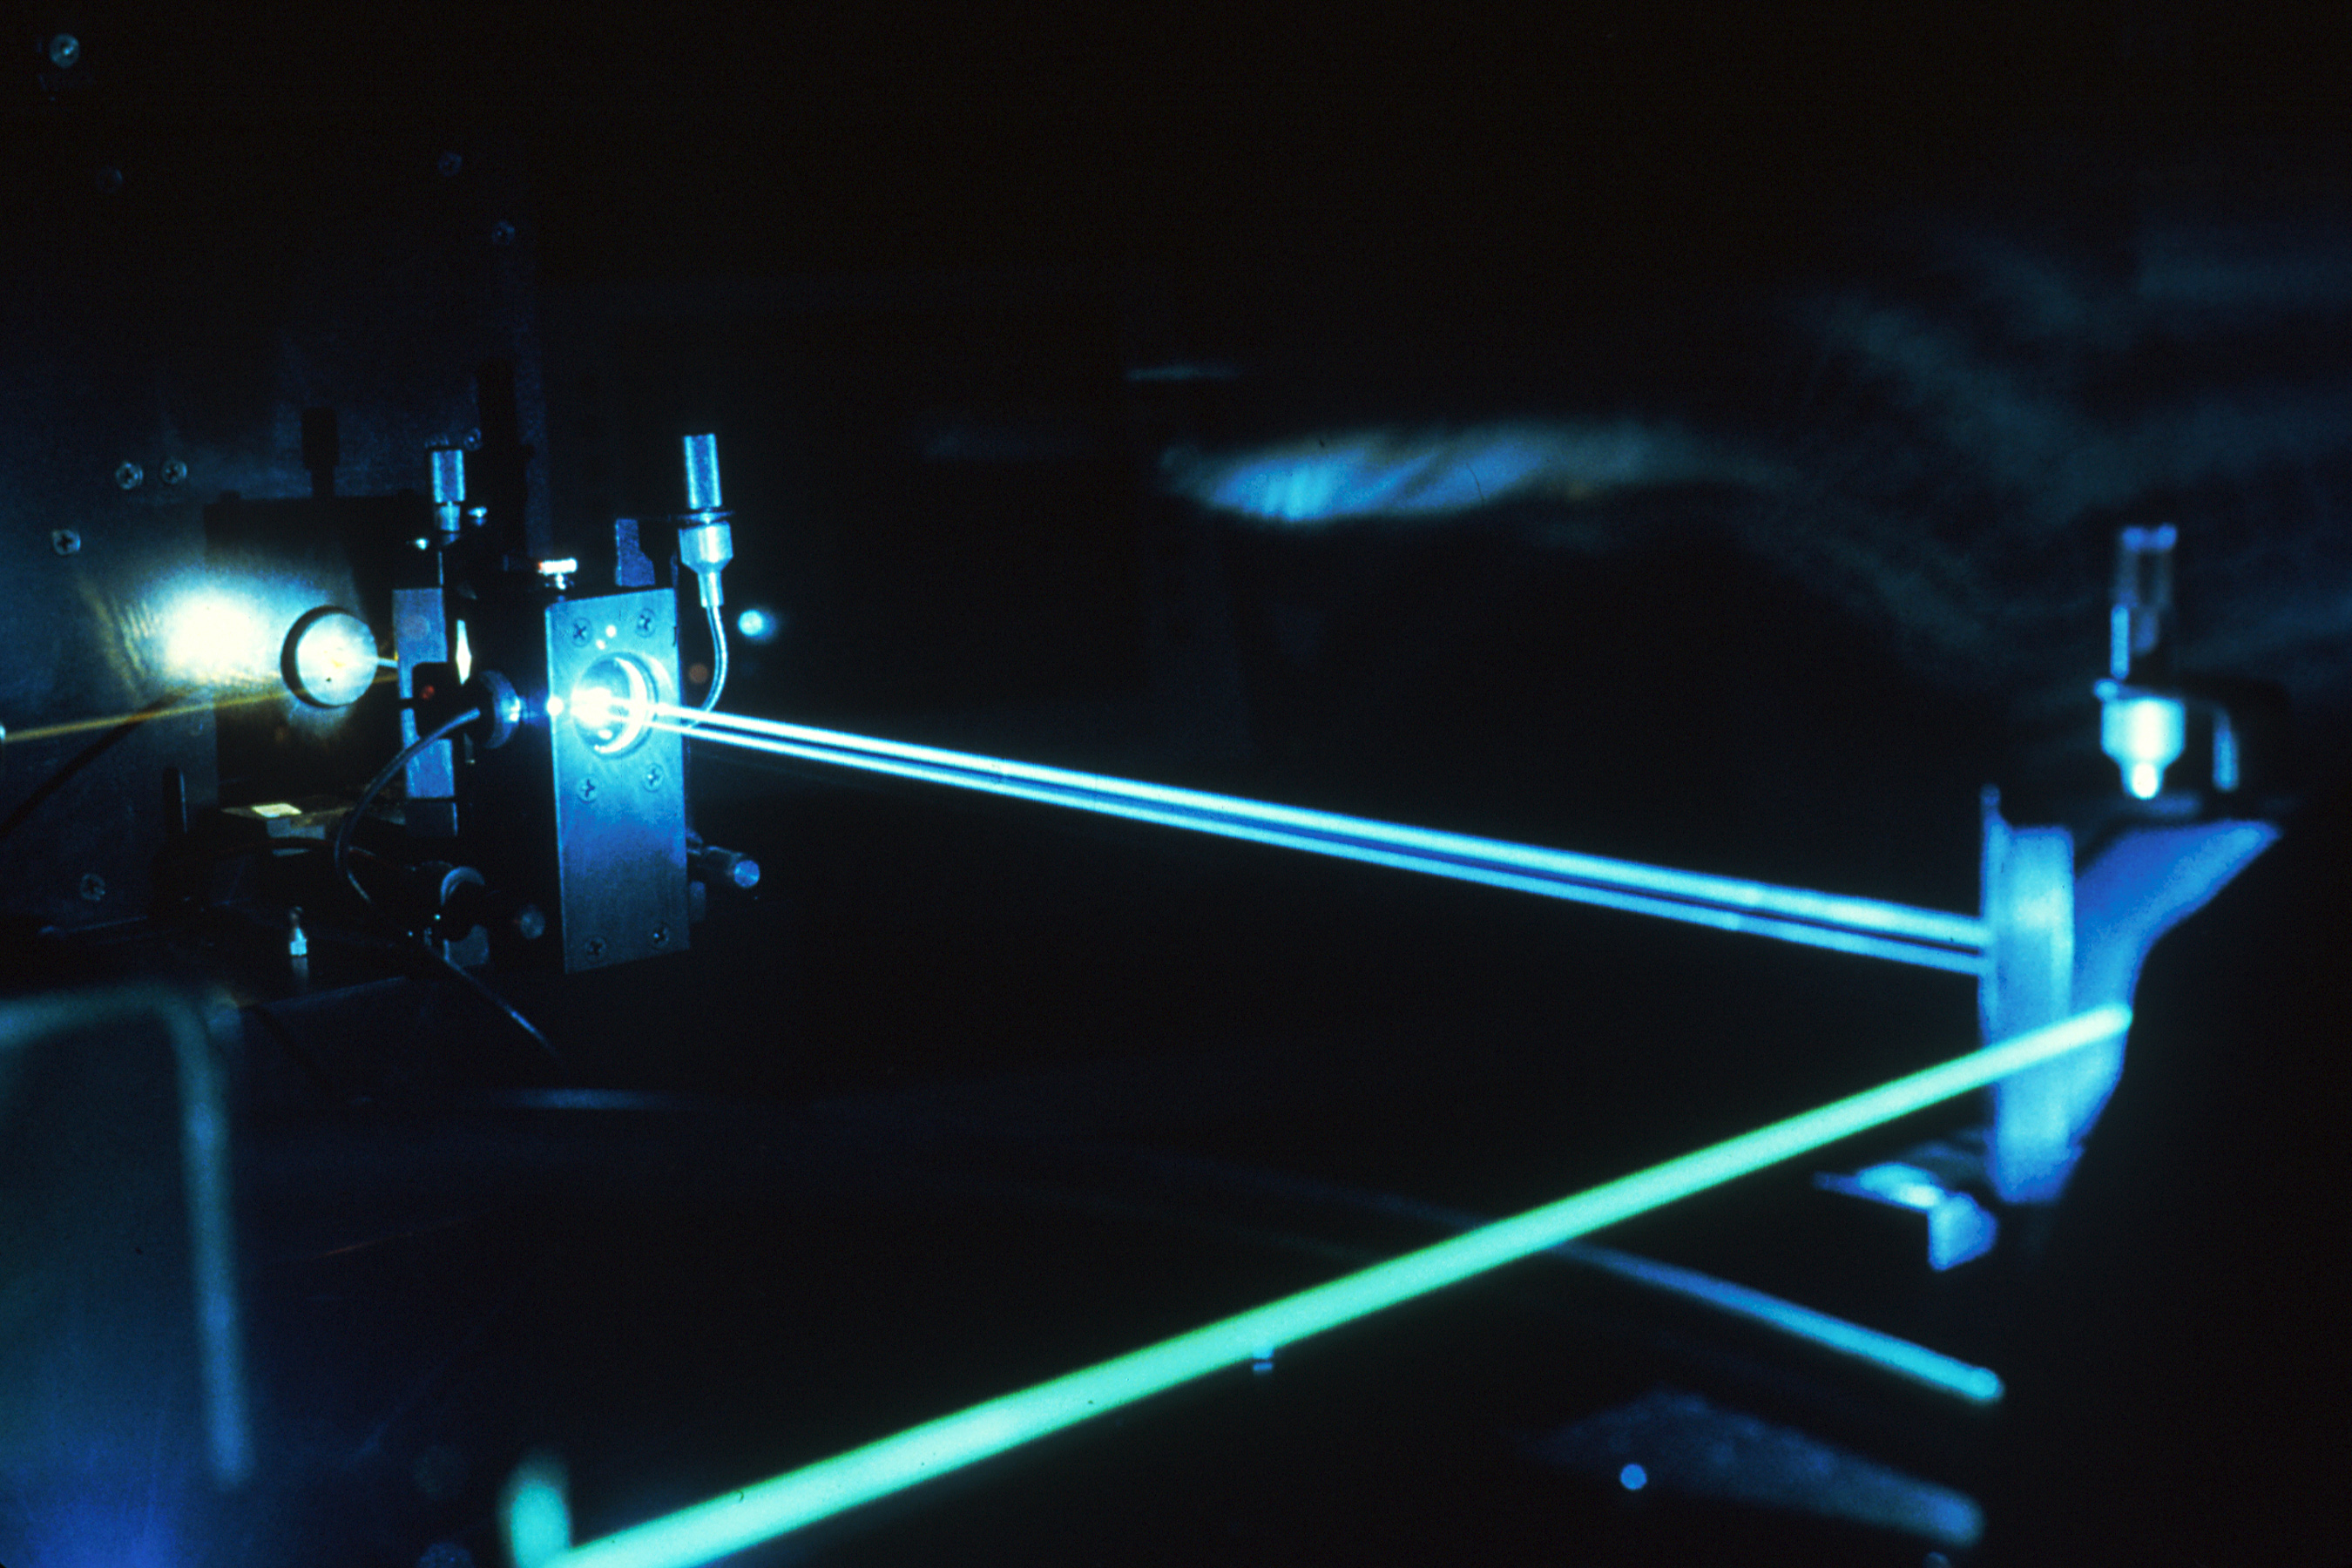 Le laser est déjà utilisé dans le domaine médical mais refroidir un liquide grâce au laser est une première qui pourrait ouvrir la porte à de nombreuses applications. © National Cancer Institute, Wikimedia Commons, DP